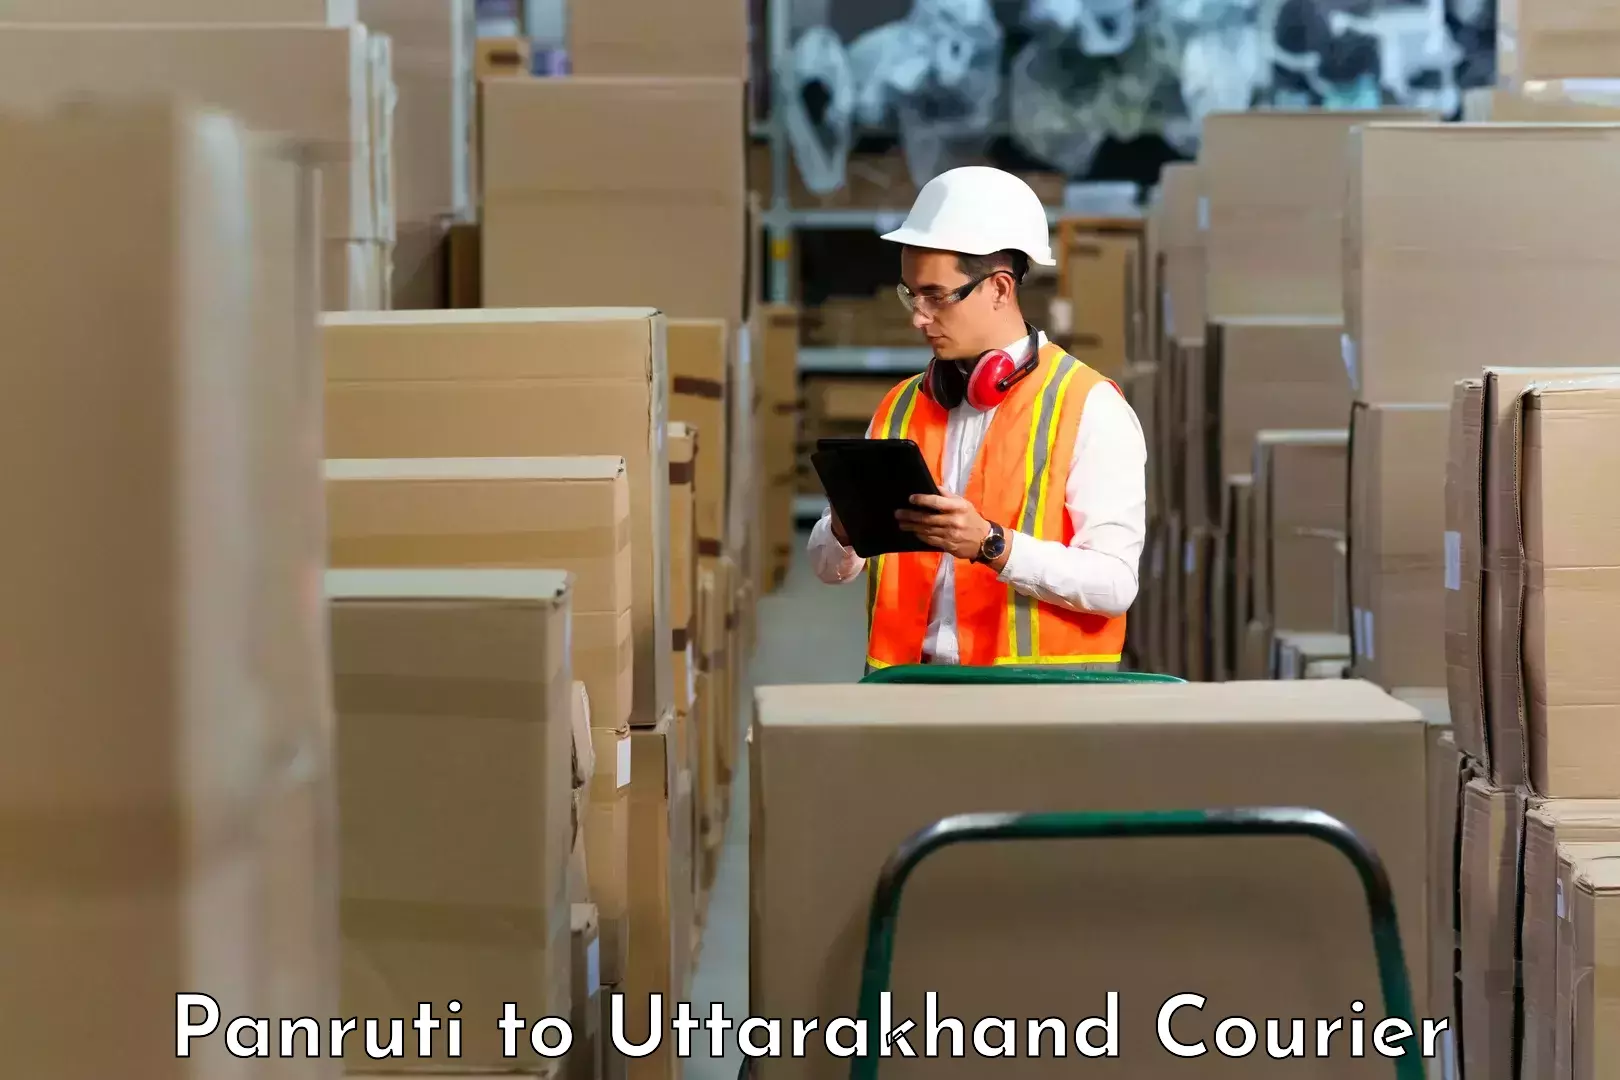 Urgent courier needs Panruti to Rishikesh